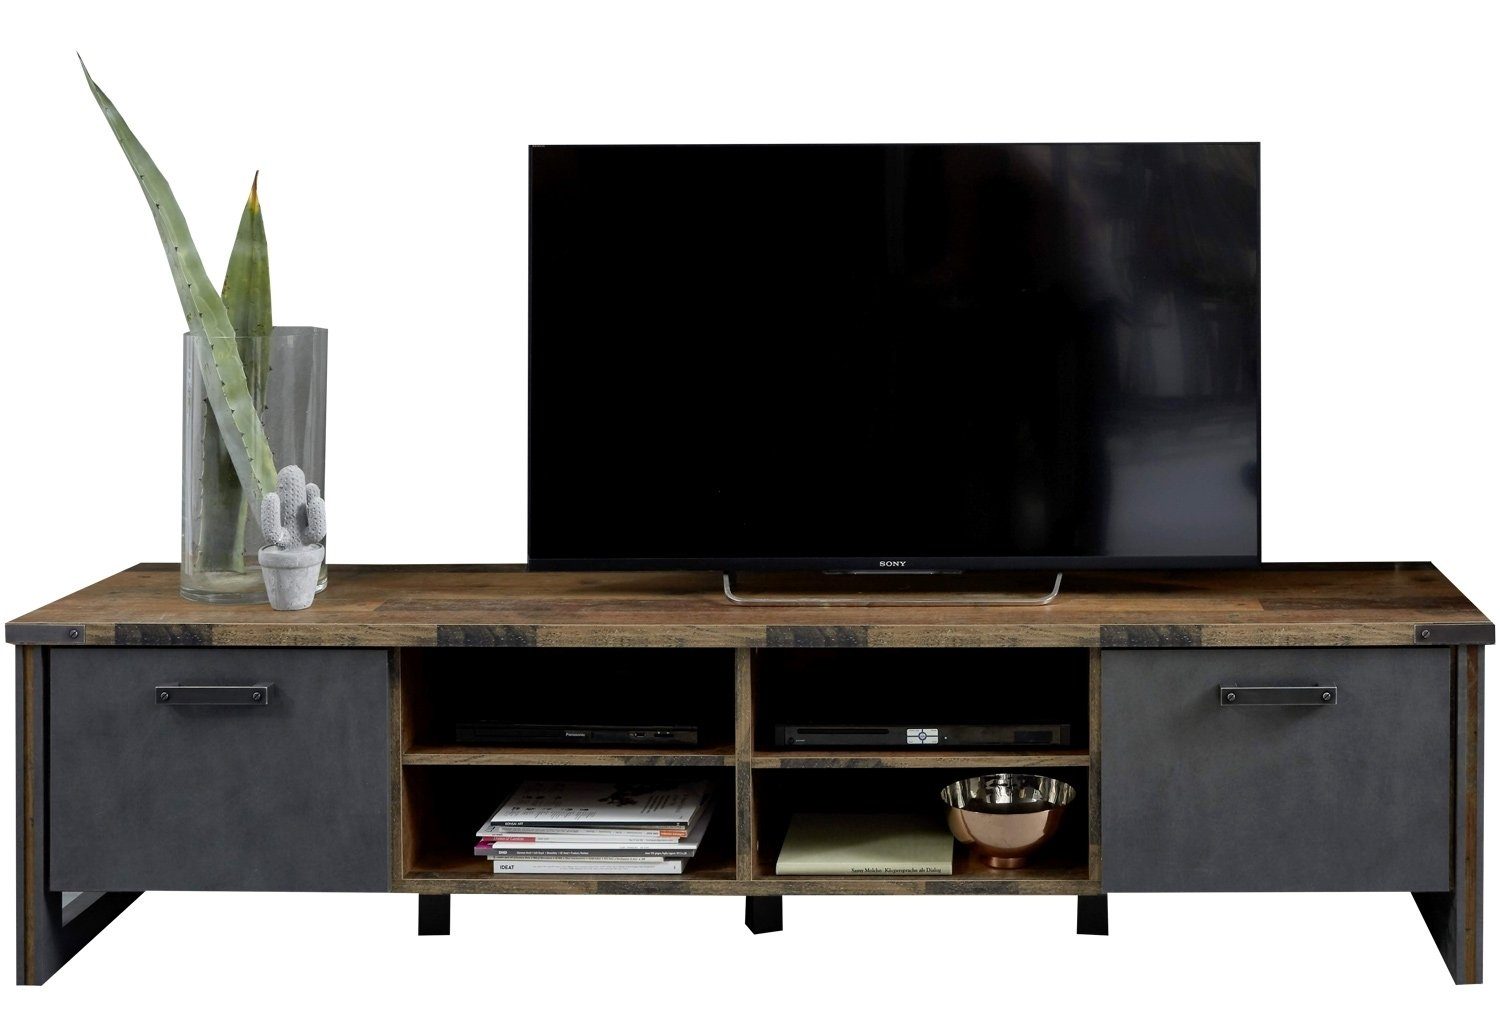 Lowboard TV-Lowboard PRIME, B 207 cm, Old Wood Dekor, 2 Klappen, 4 offene Fächer